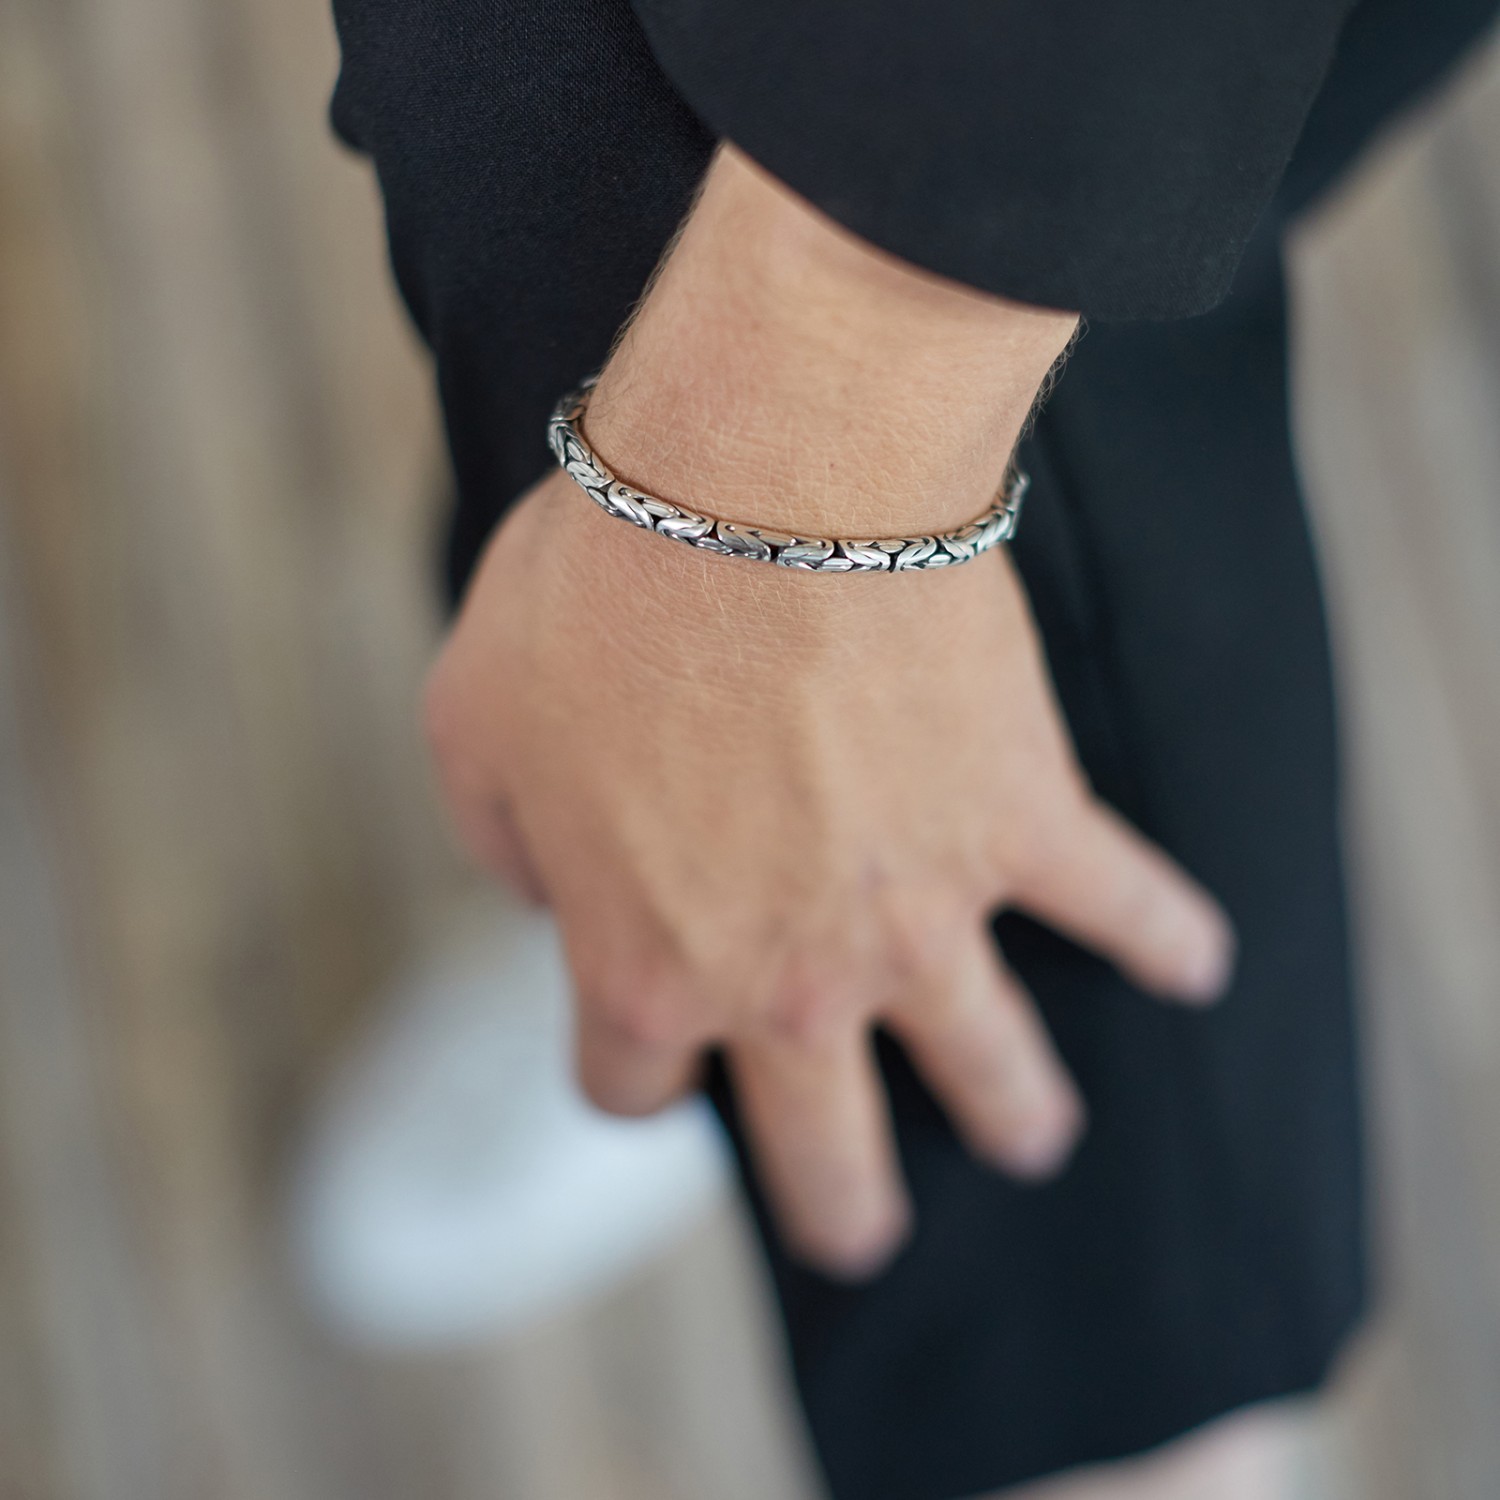 Rabatt 40 % Silber/Schwarz S Pertegaz Armband und Ring Set DAMEN Accessoires Modeschmuckset Silber Größe S 